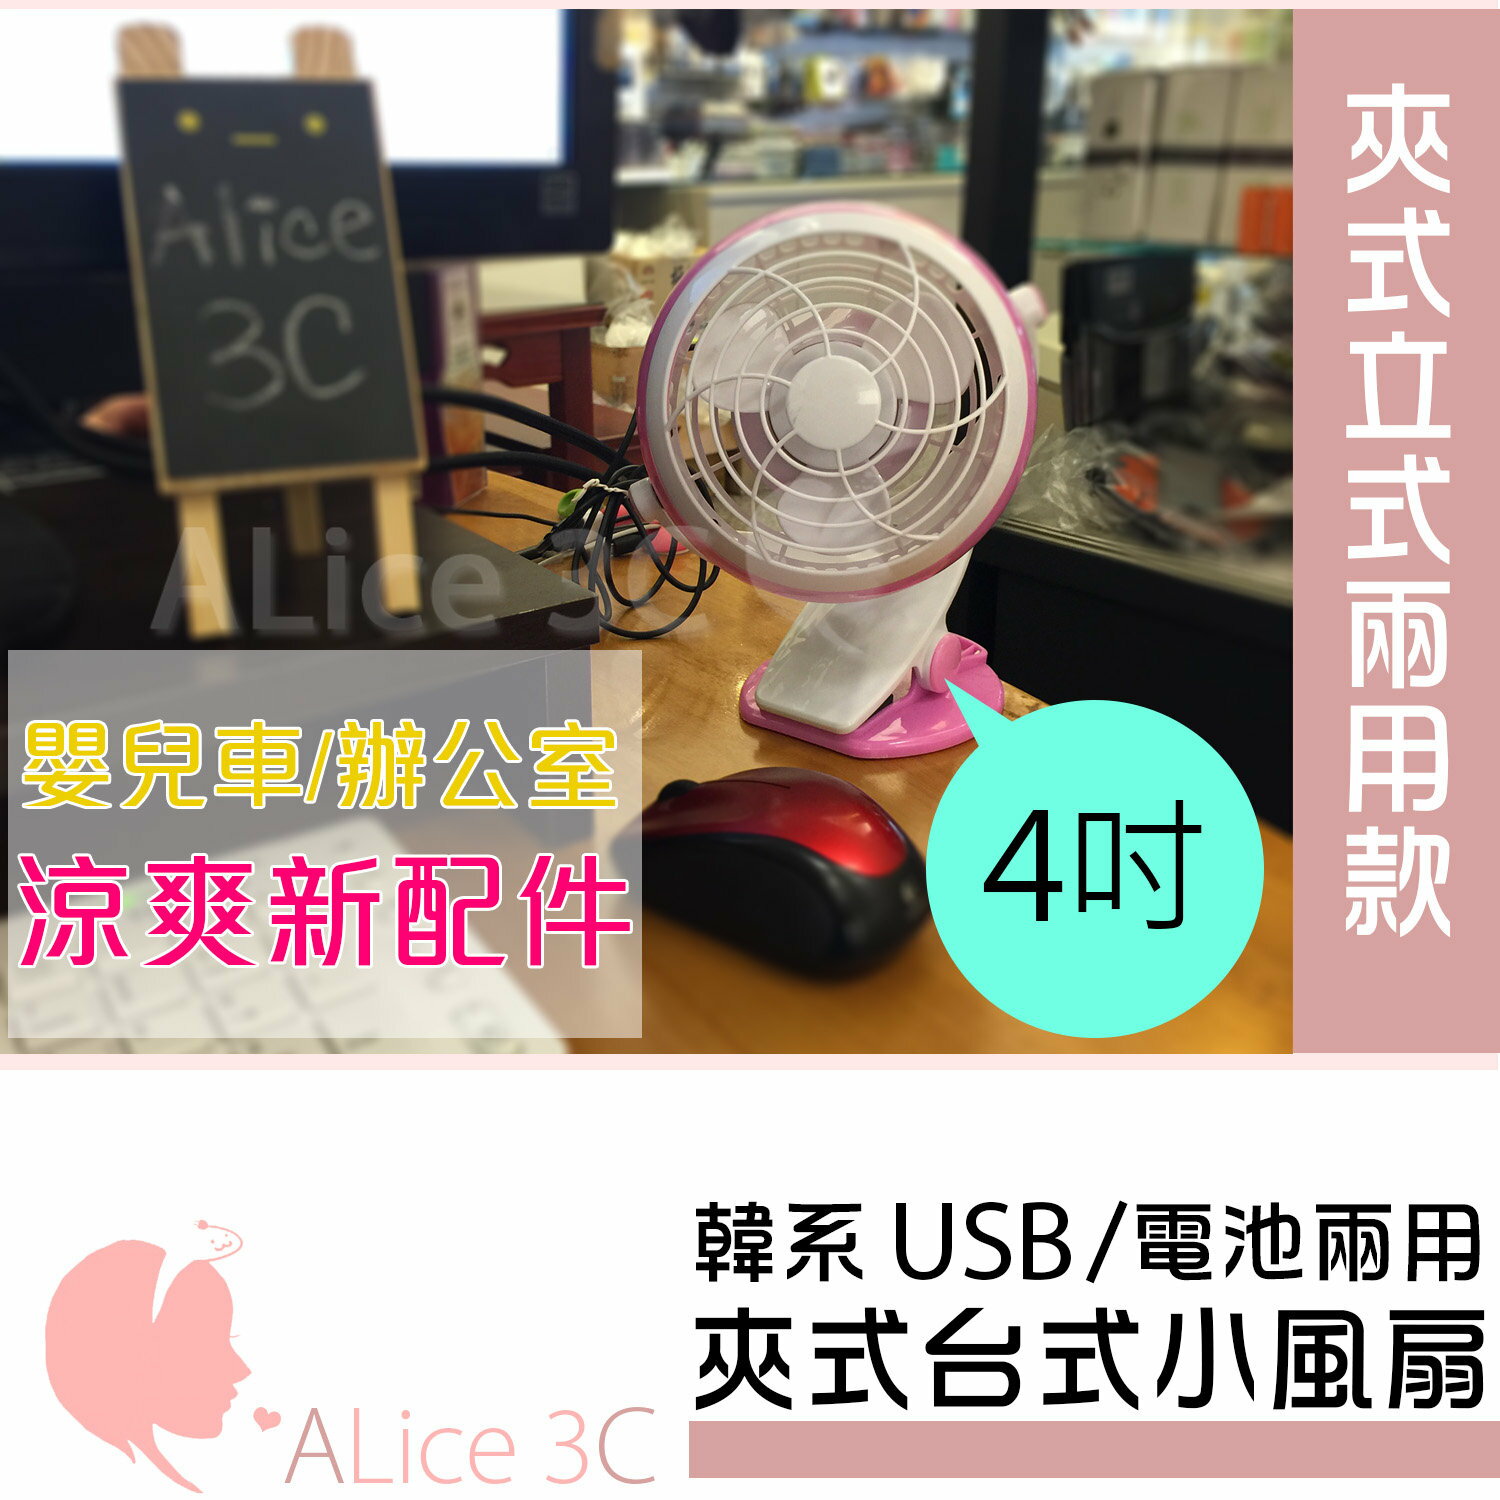 韓系 立式夾式USB小風扇【OA-003】4吋靜音夾扇 360度調整 電風扇 小電扇 嬰兒車可用  